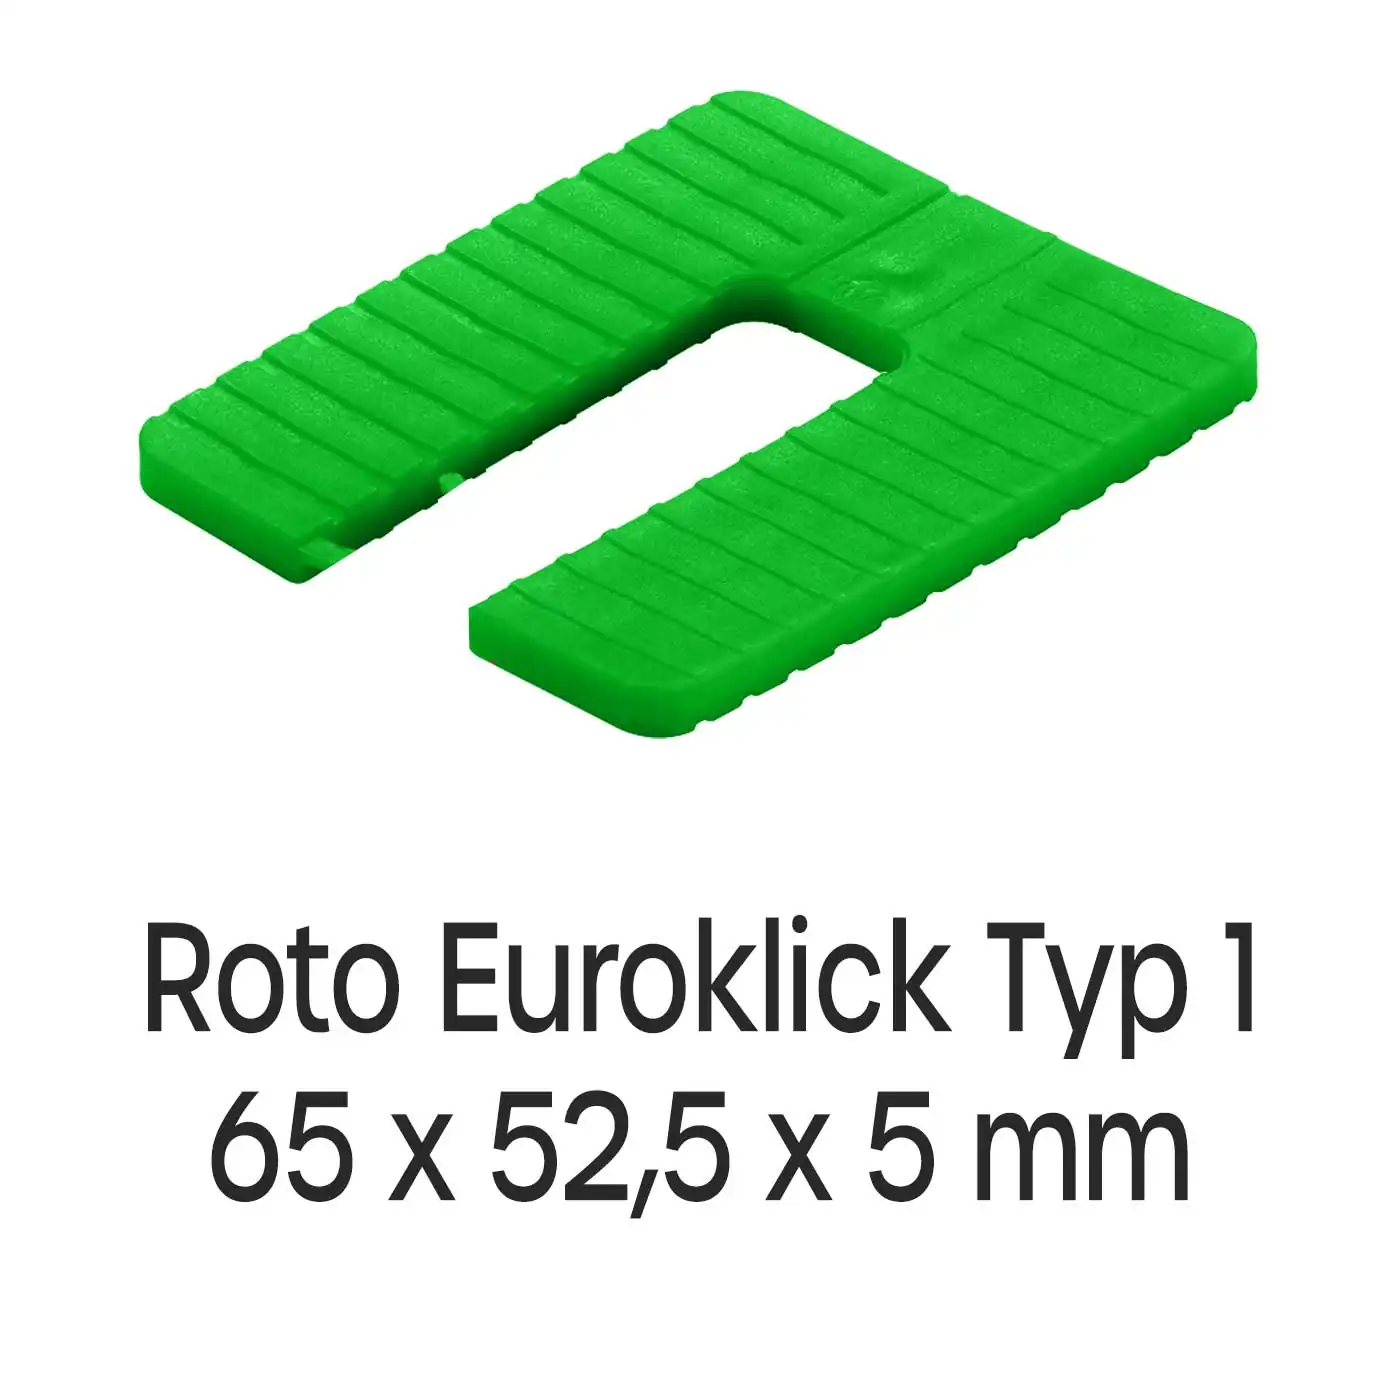 Distanzplatten Roto Euroklick Typ 1 65 x 52,5 x 5 mm 500 Stück